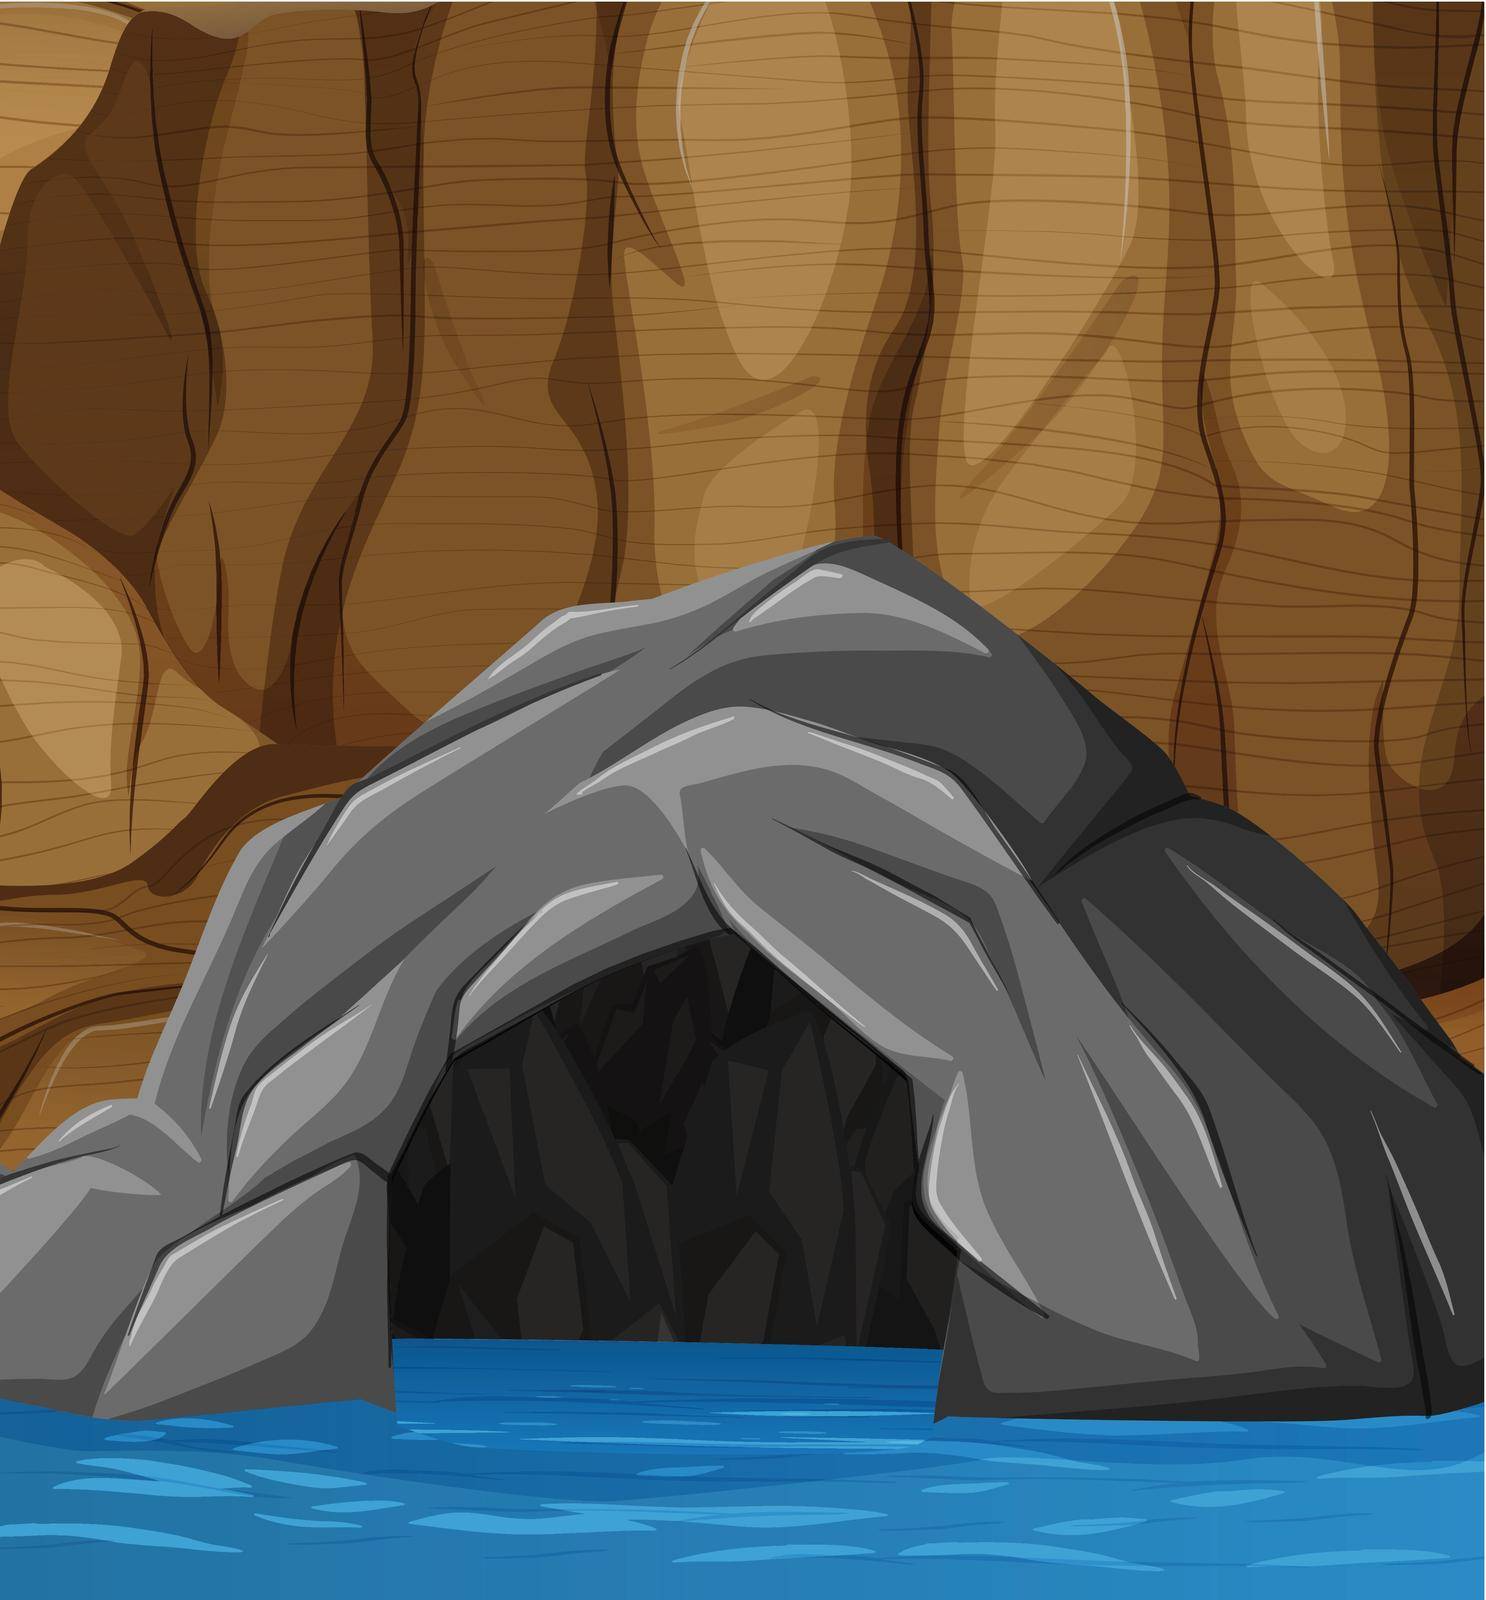 Natural flooded cave entrance illustration